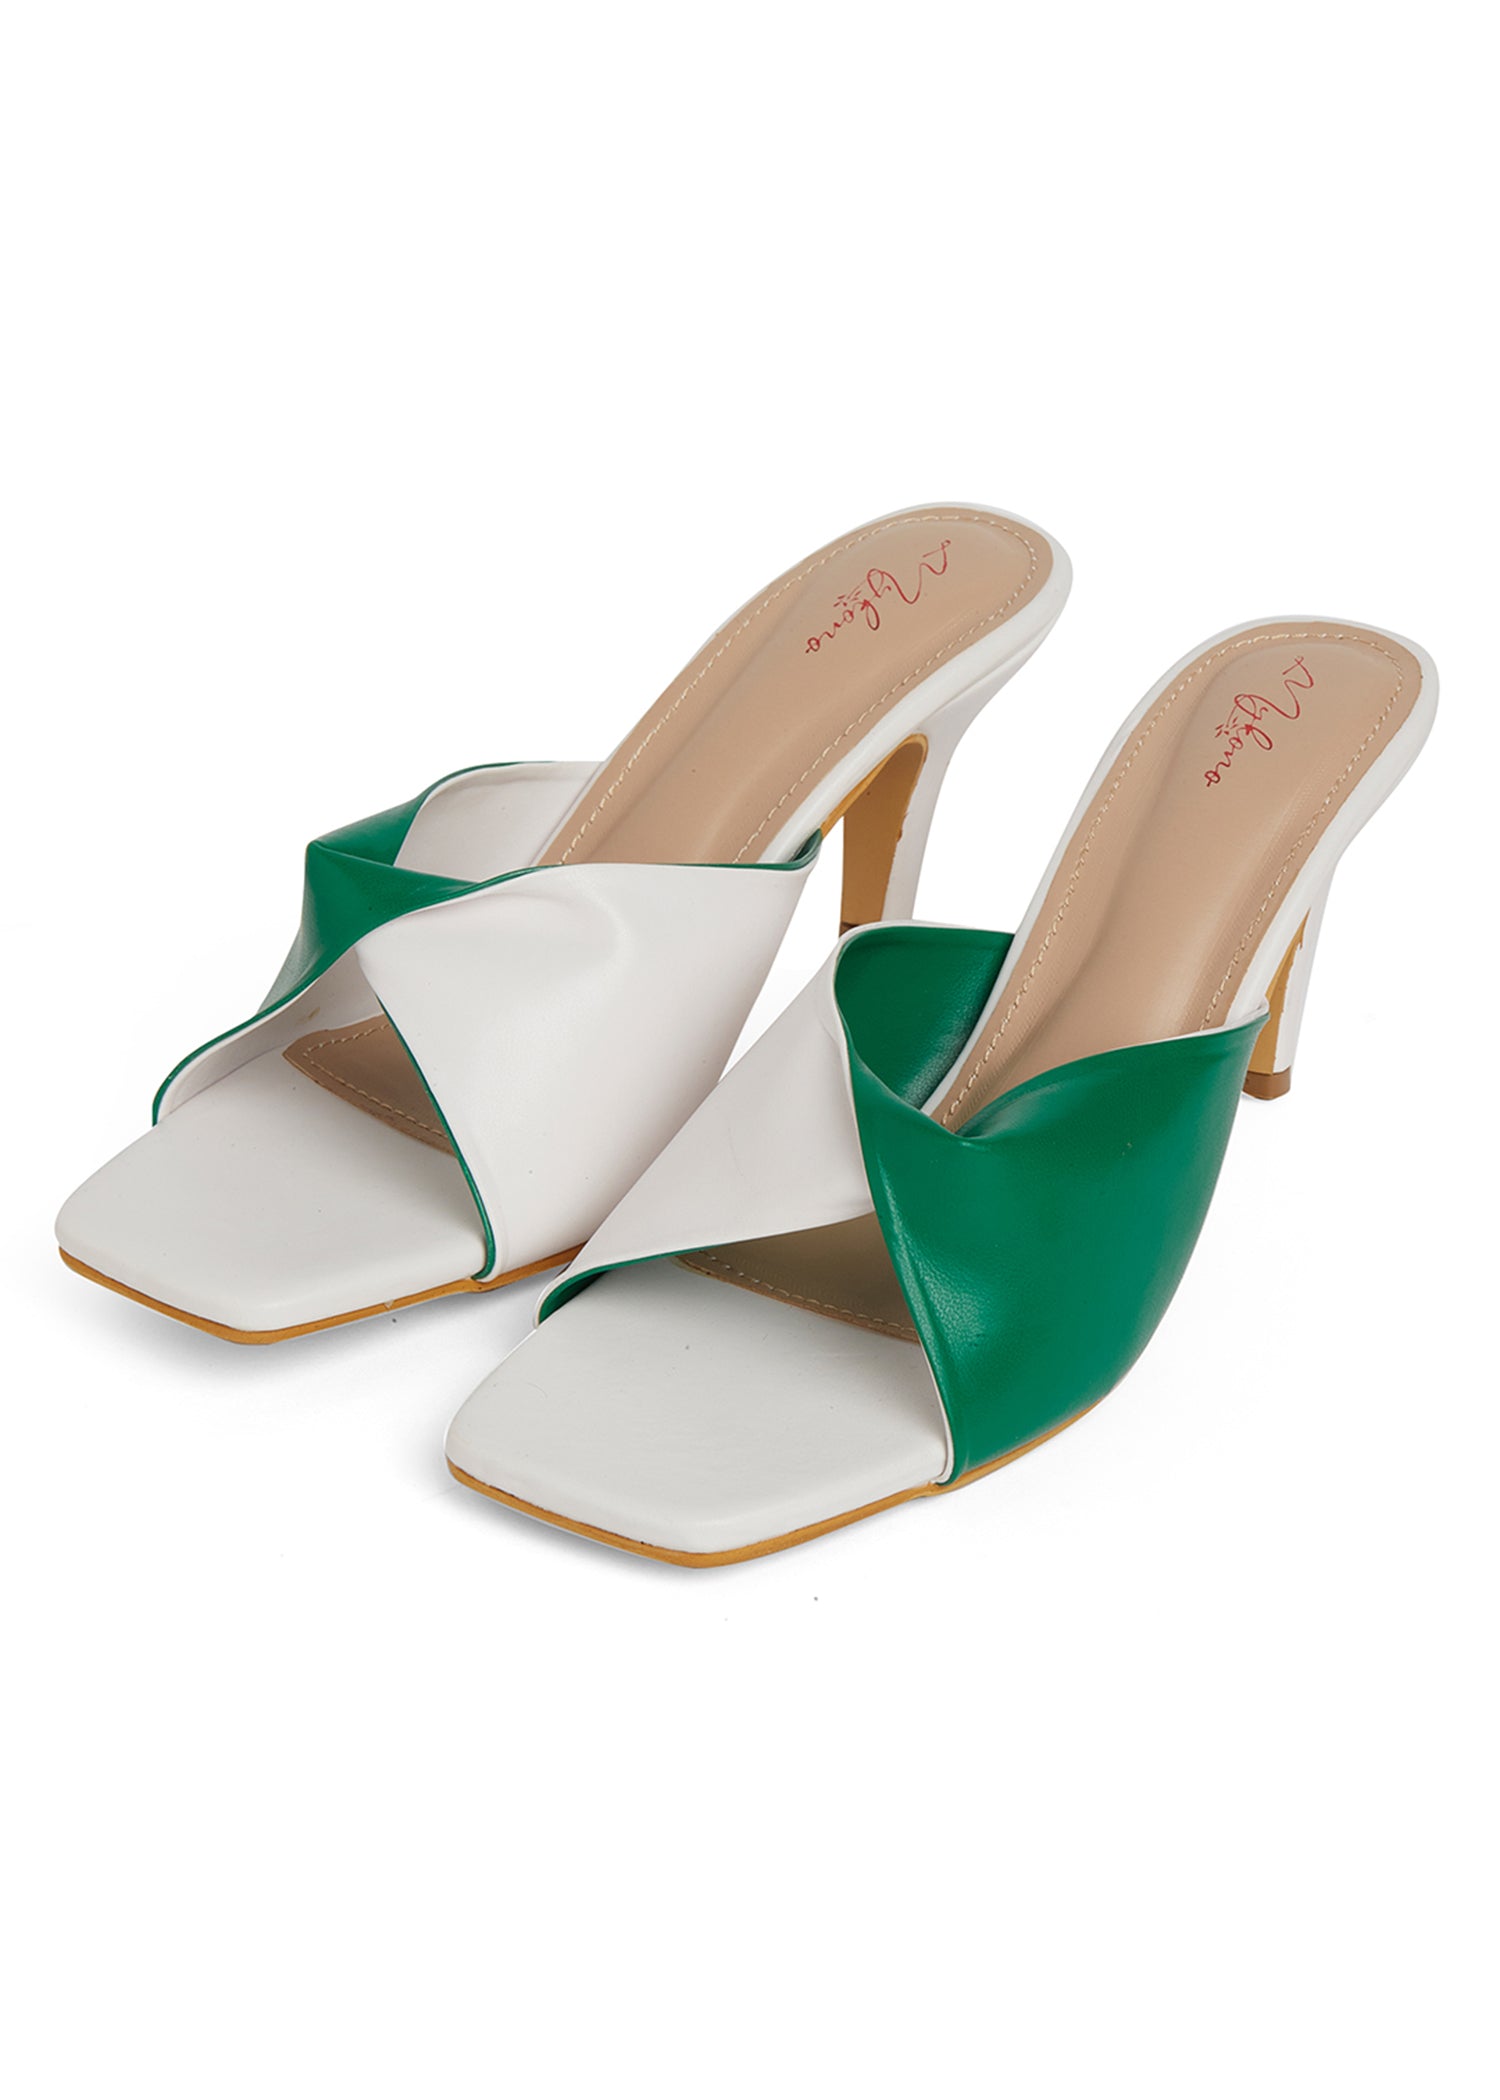 Sea Green - Sandal - Faux Leather - Sandal